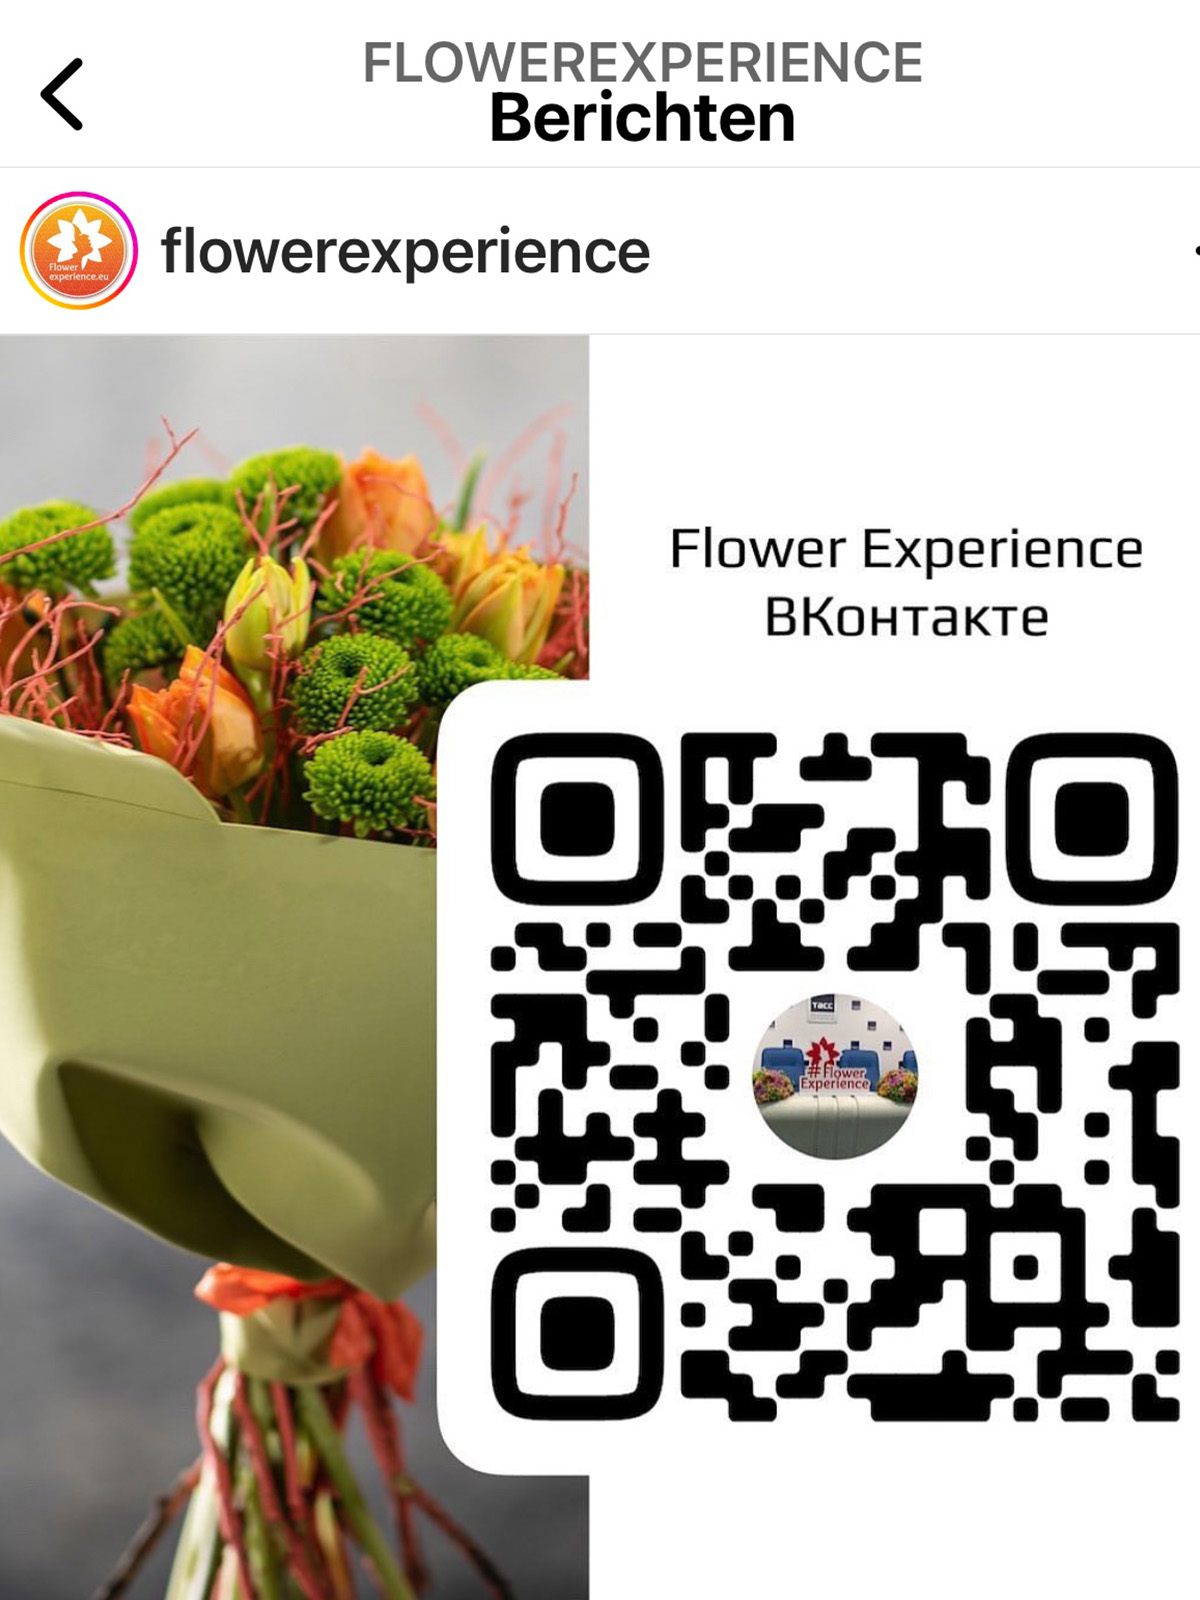 Flower Experience VKontakte - on Thursd